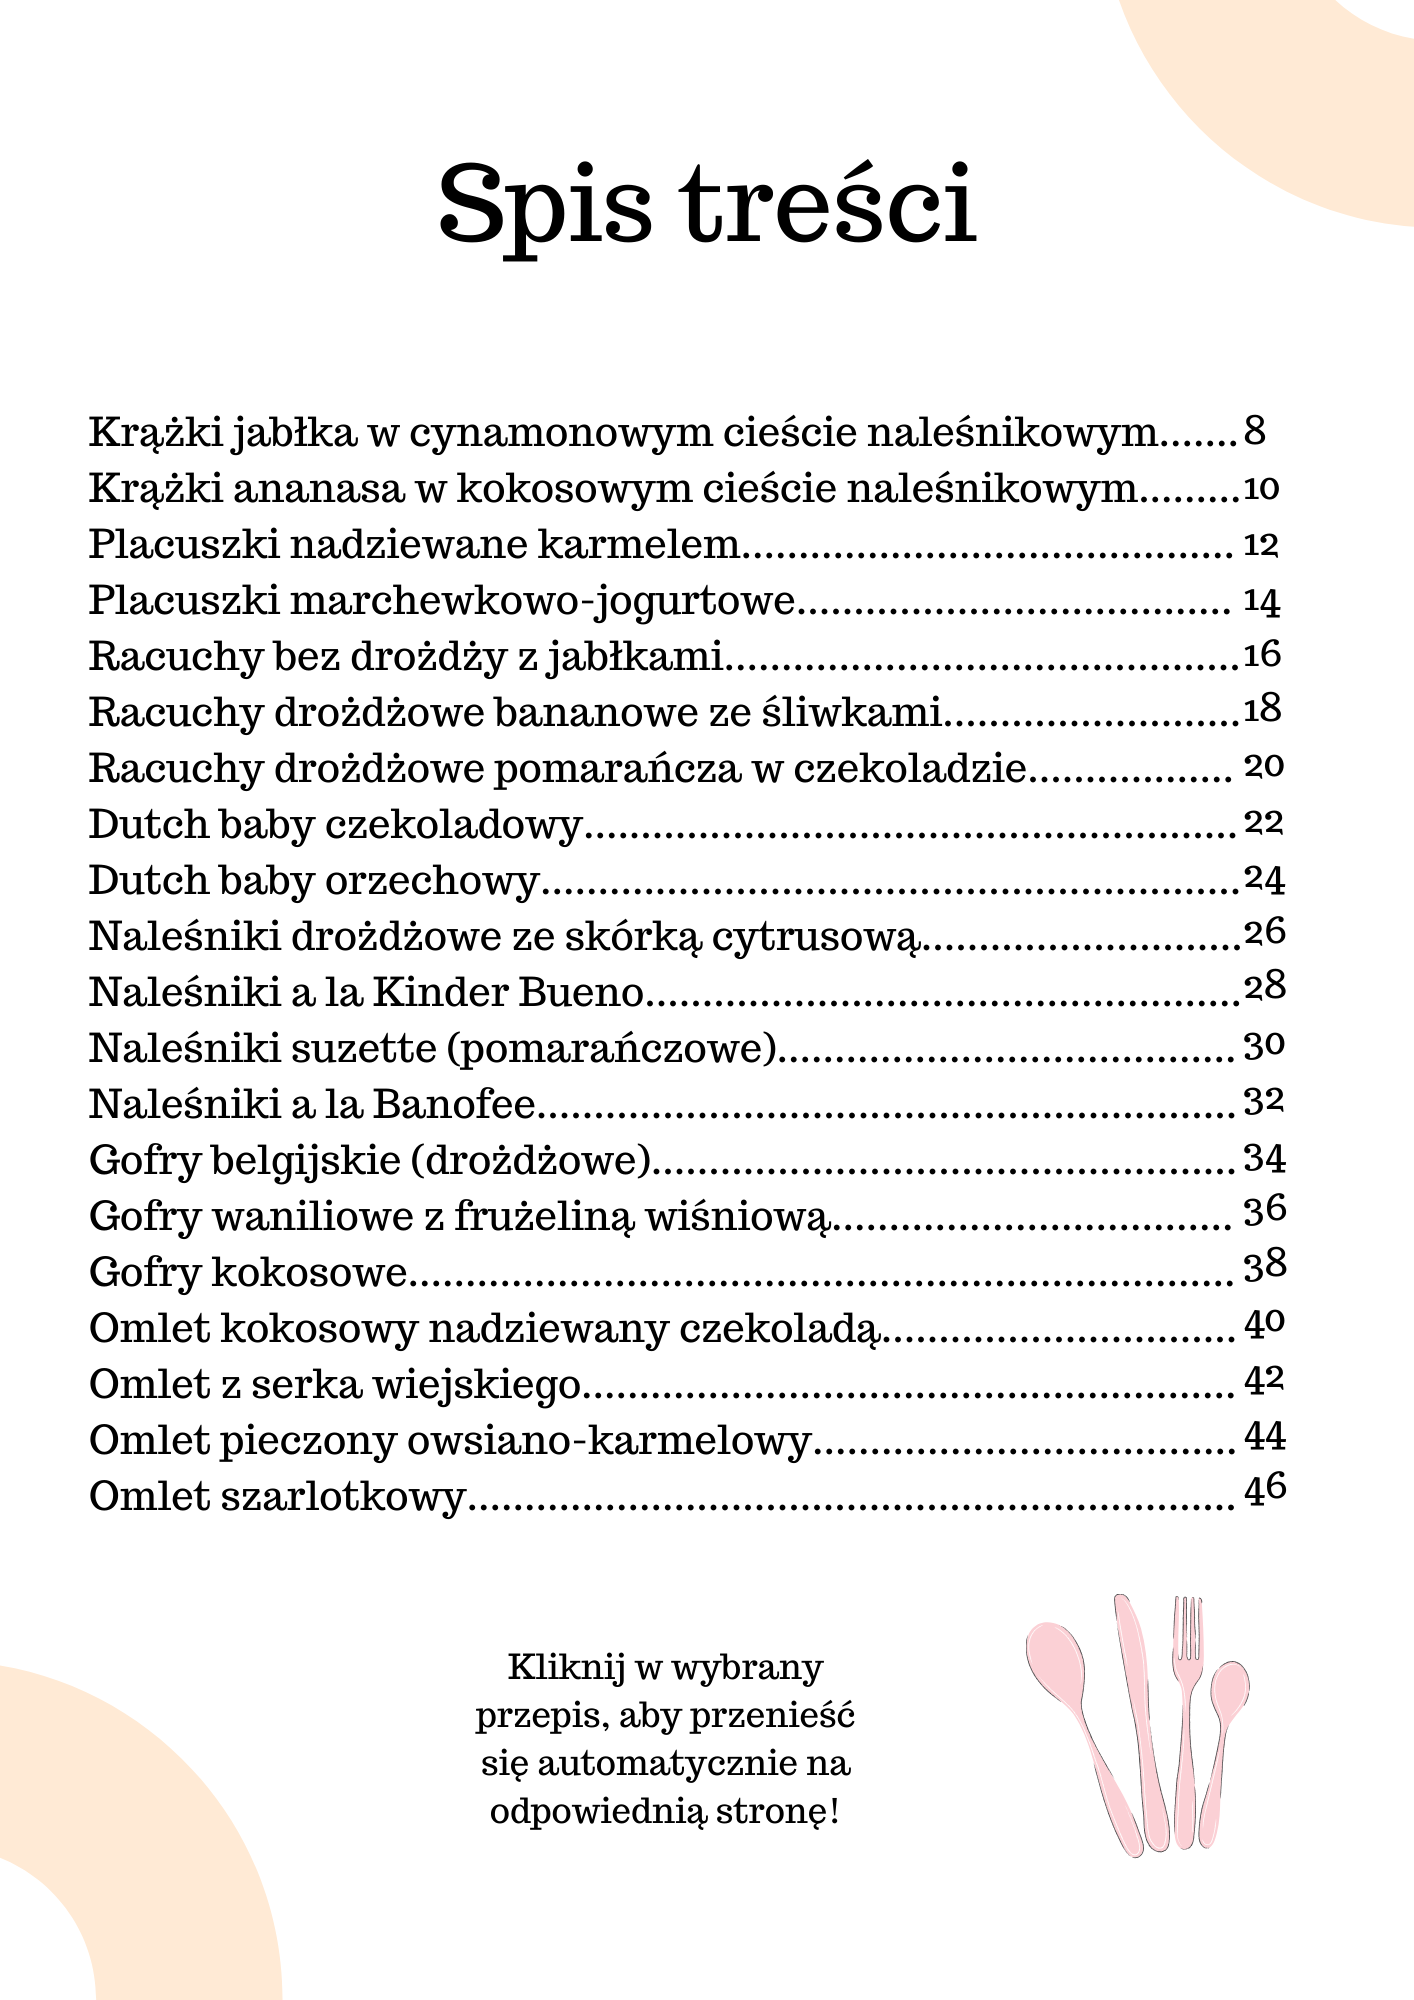 E-book "Słodkie poranki"